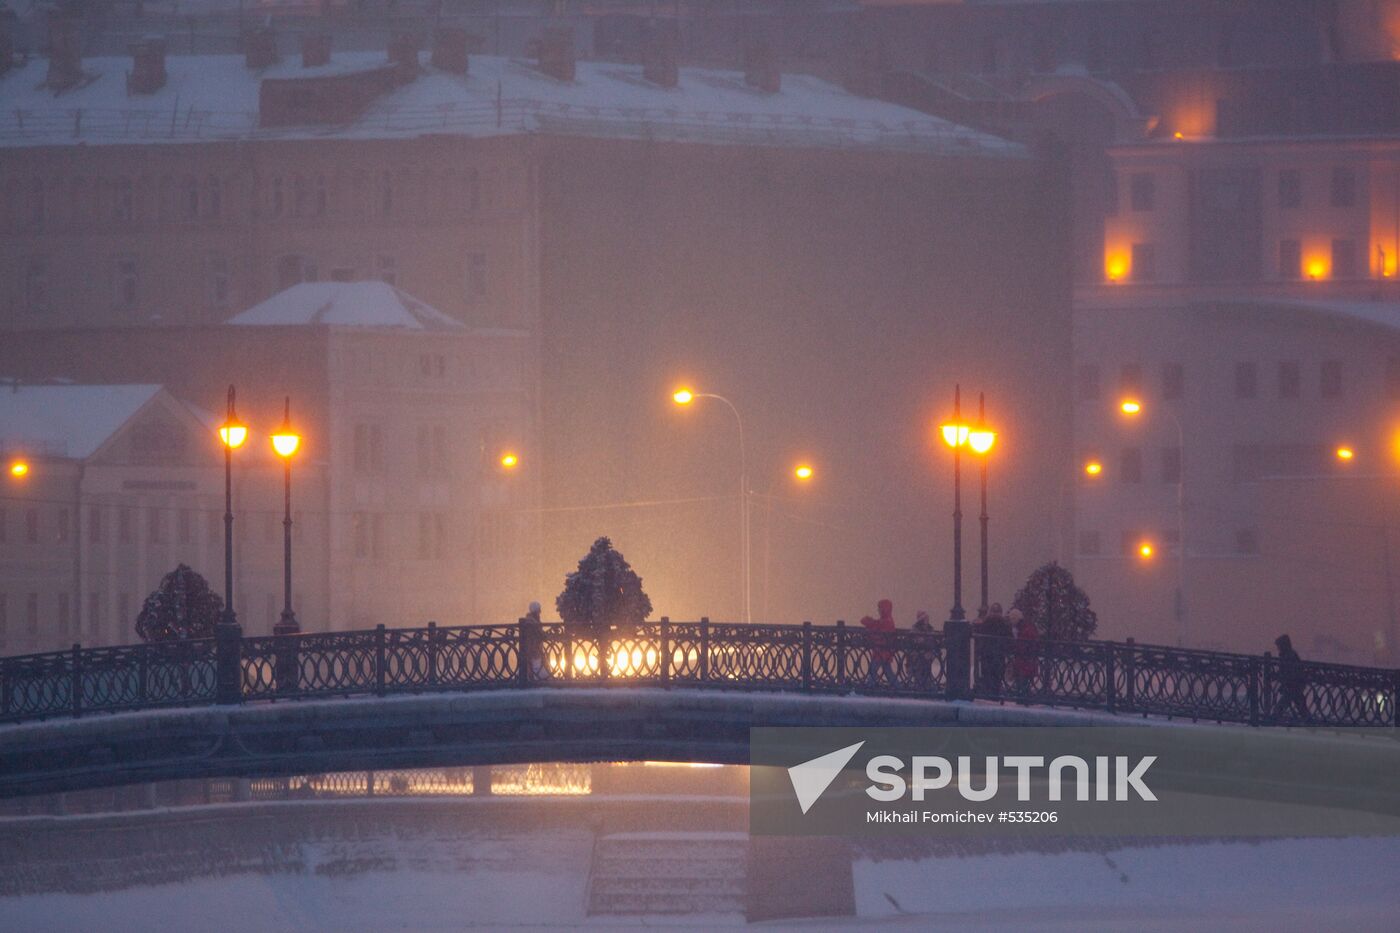 View of Luzhkov Bridge